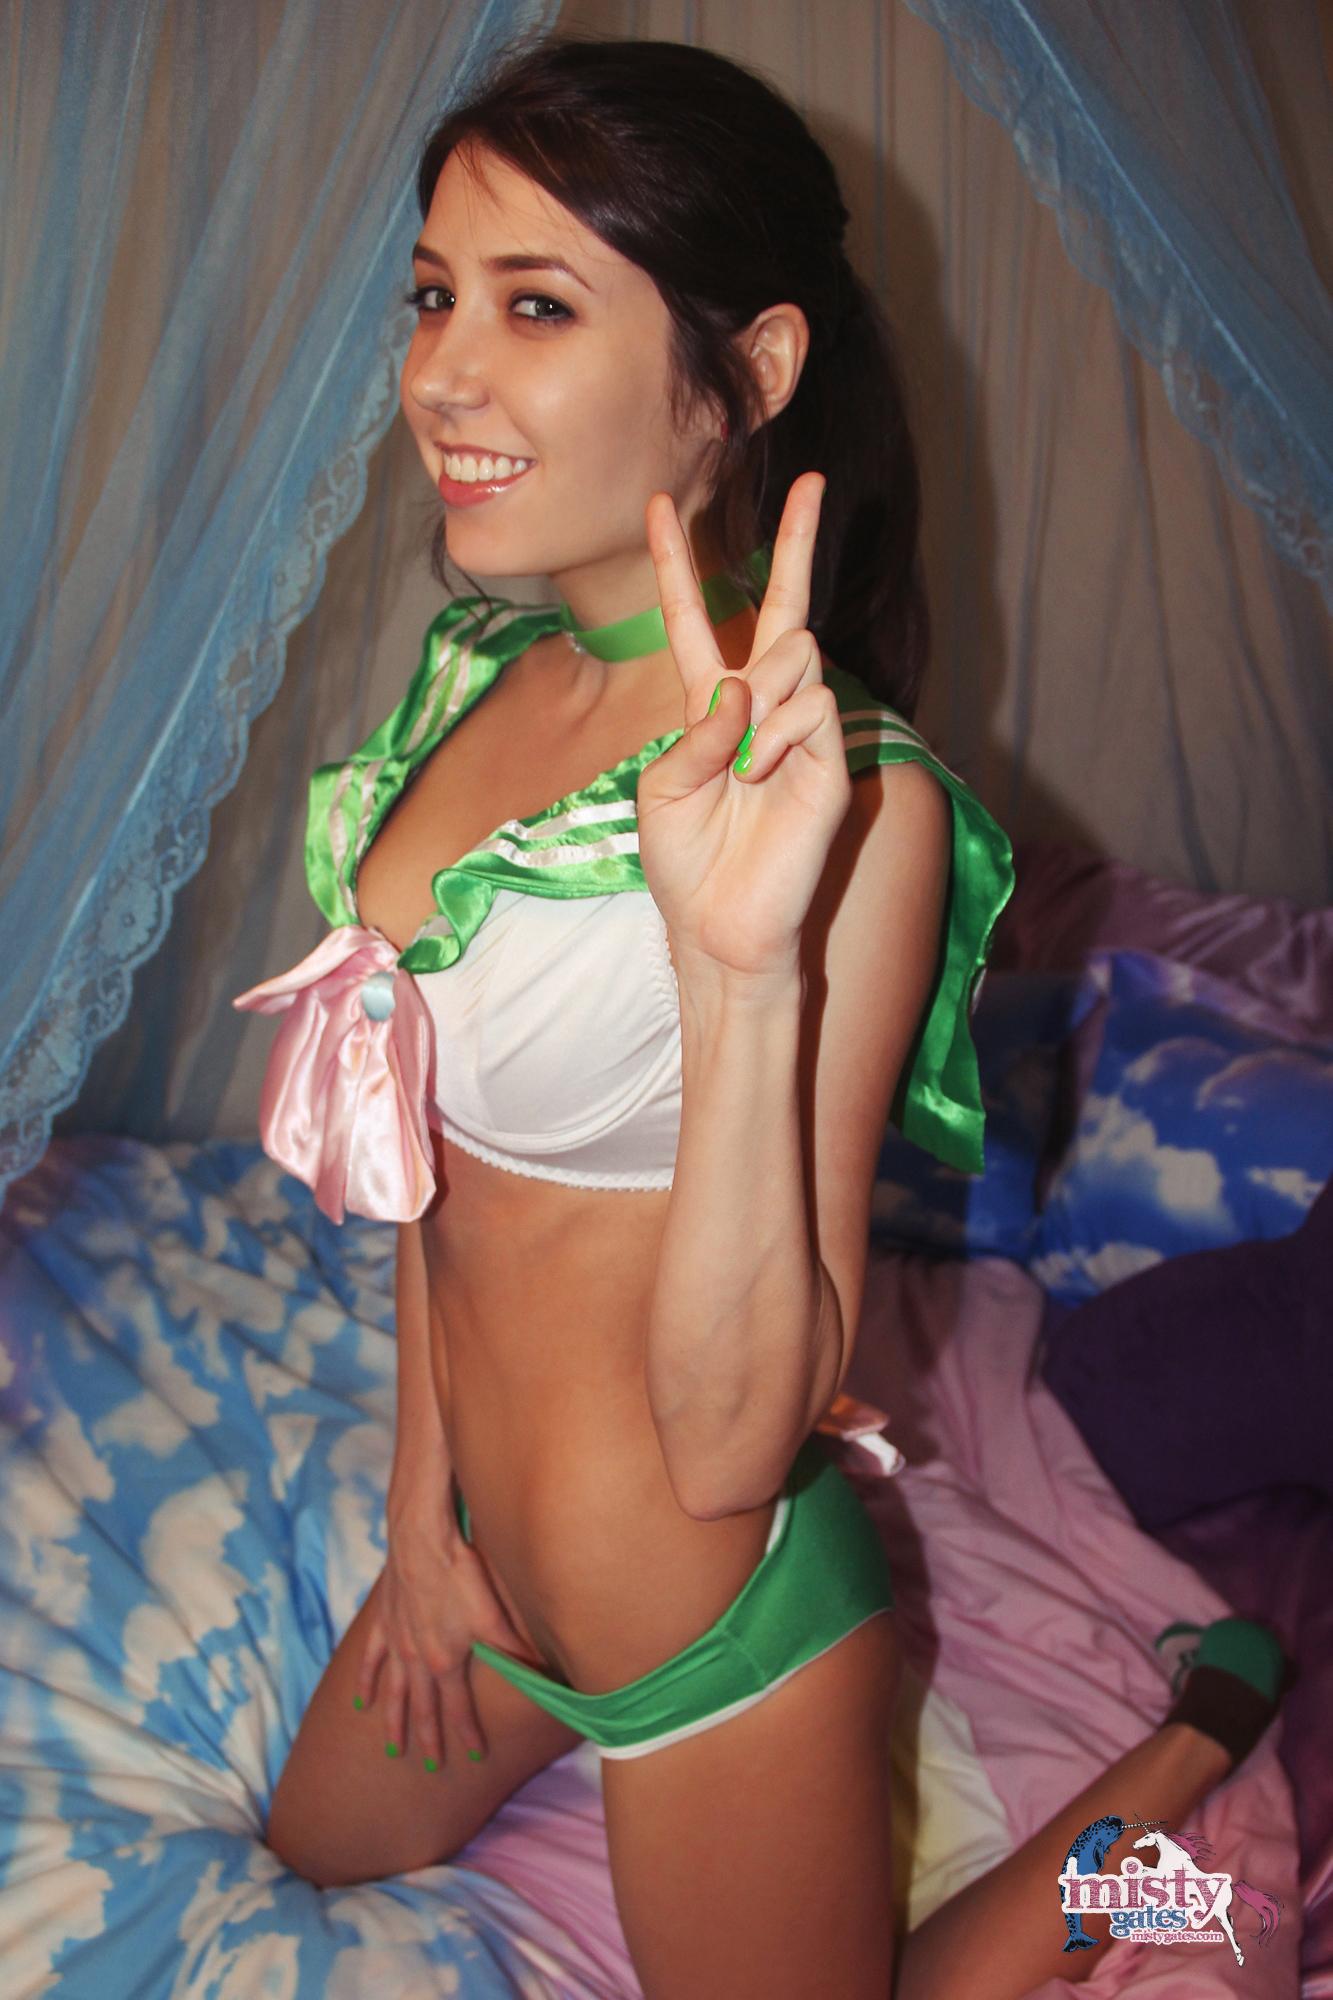 Misty hace un divertido cosplay como sailor jupiter en el dormitorio
 #59590217